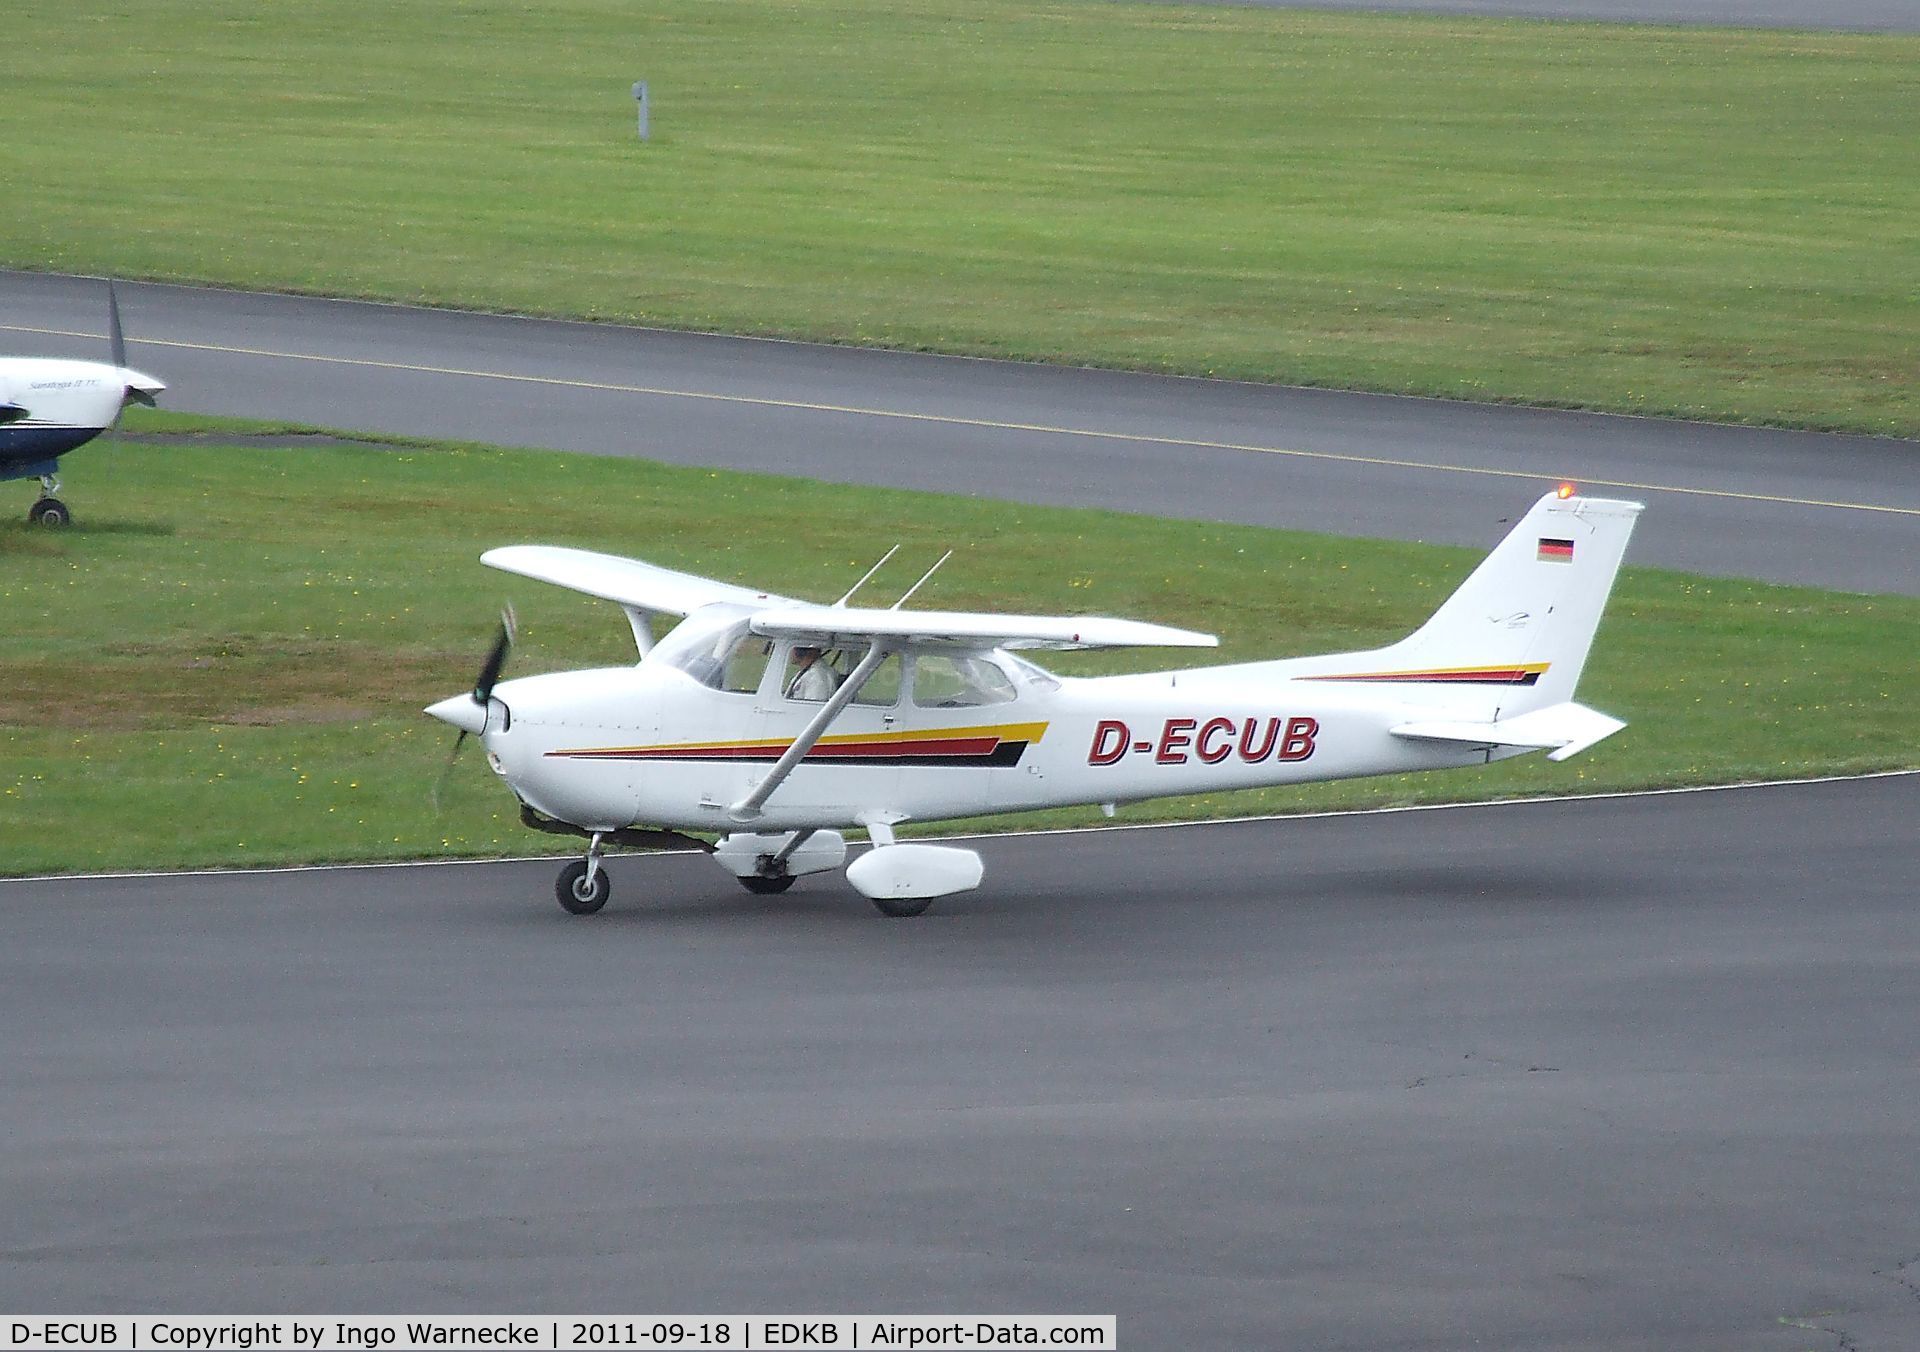 D-ECUB, 1979 Reims F172N Skyhawk C/N 1823, Cessna (Reims) F172N at Bonn-Hangelar airfield